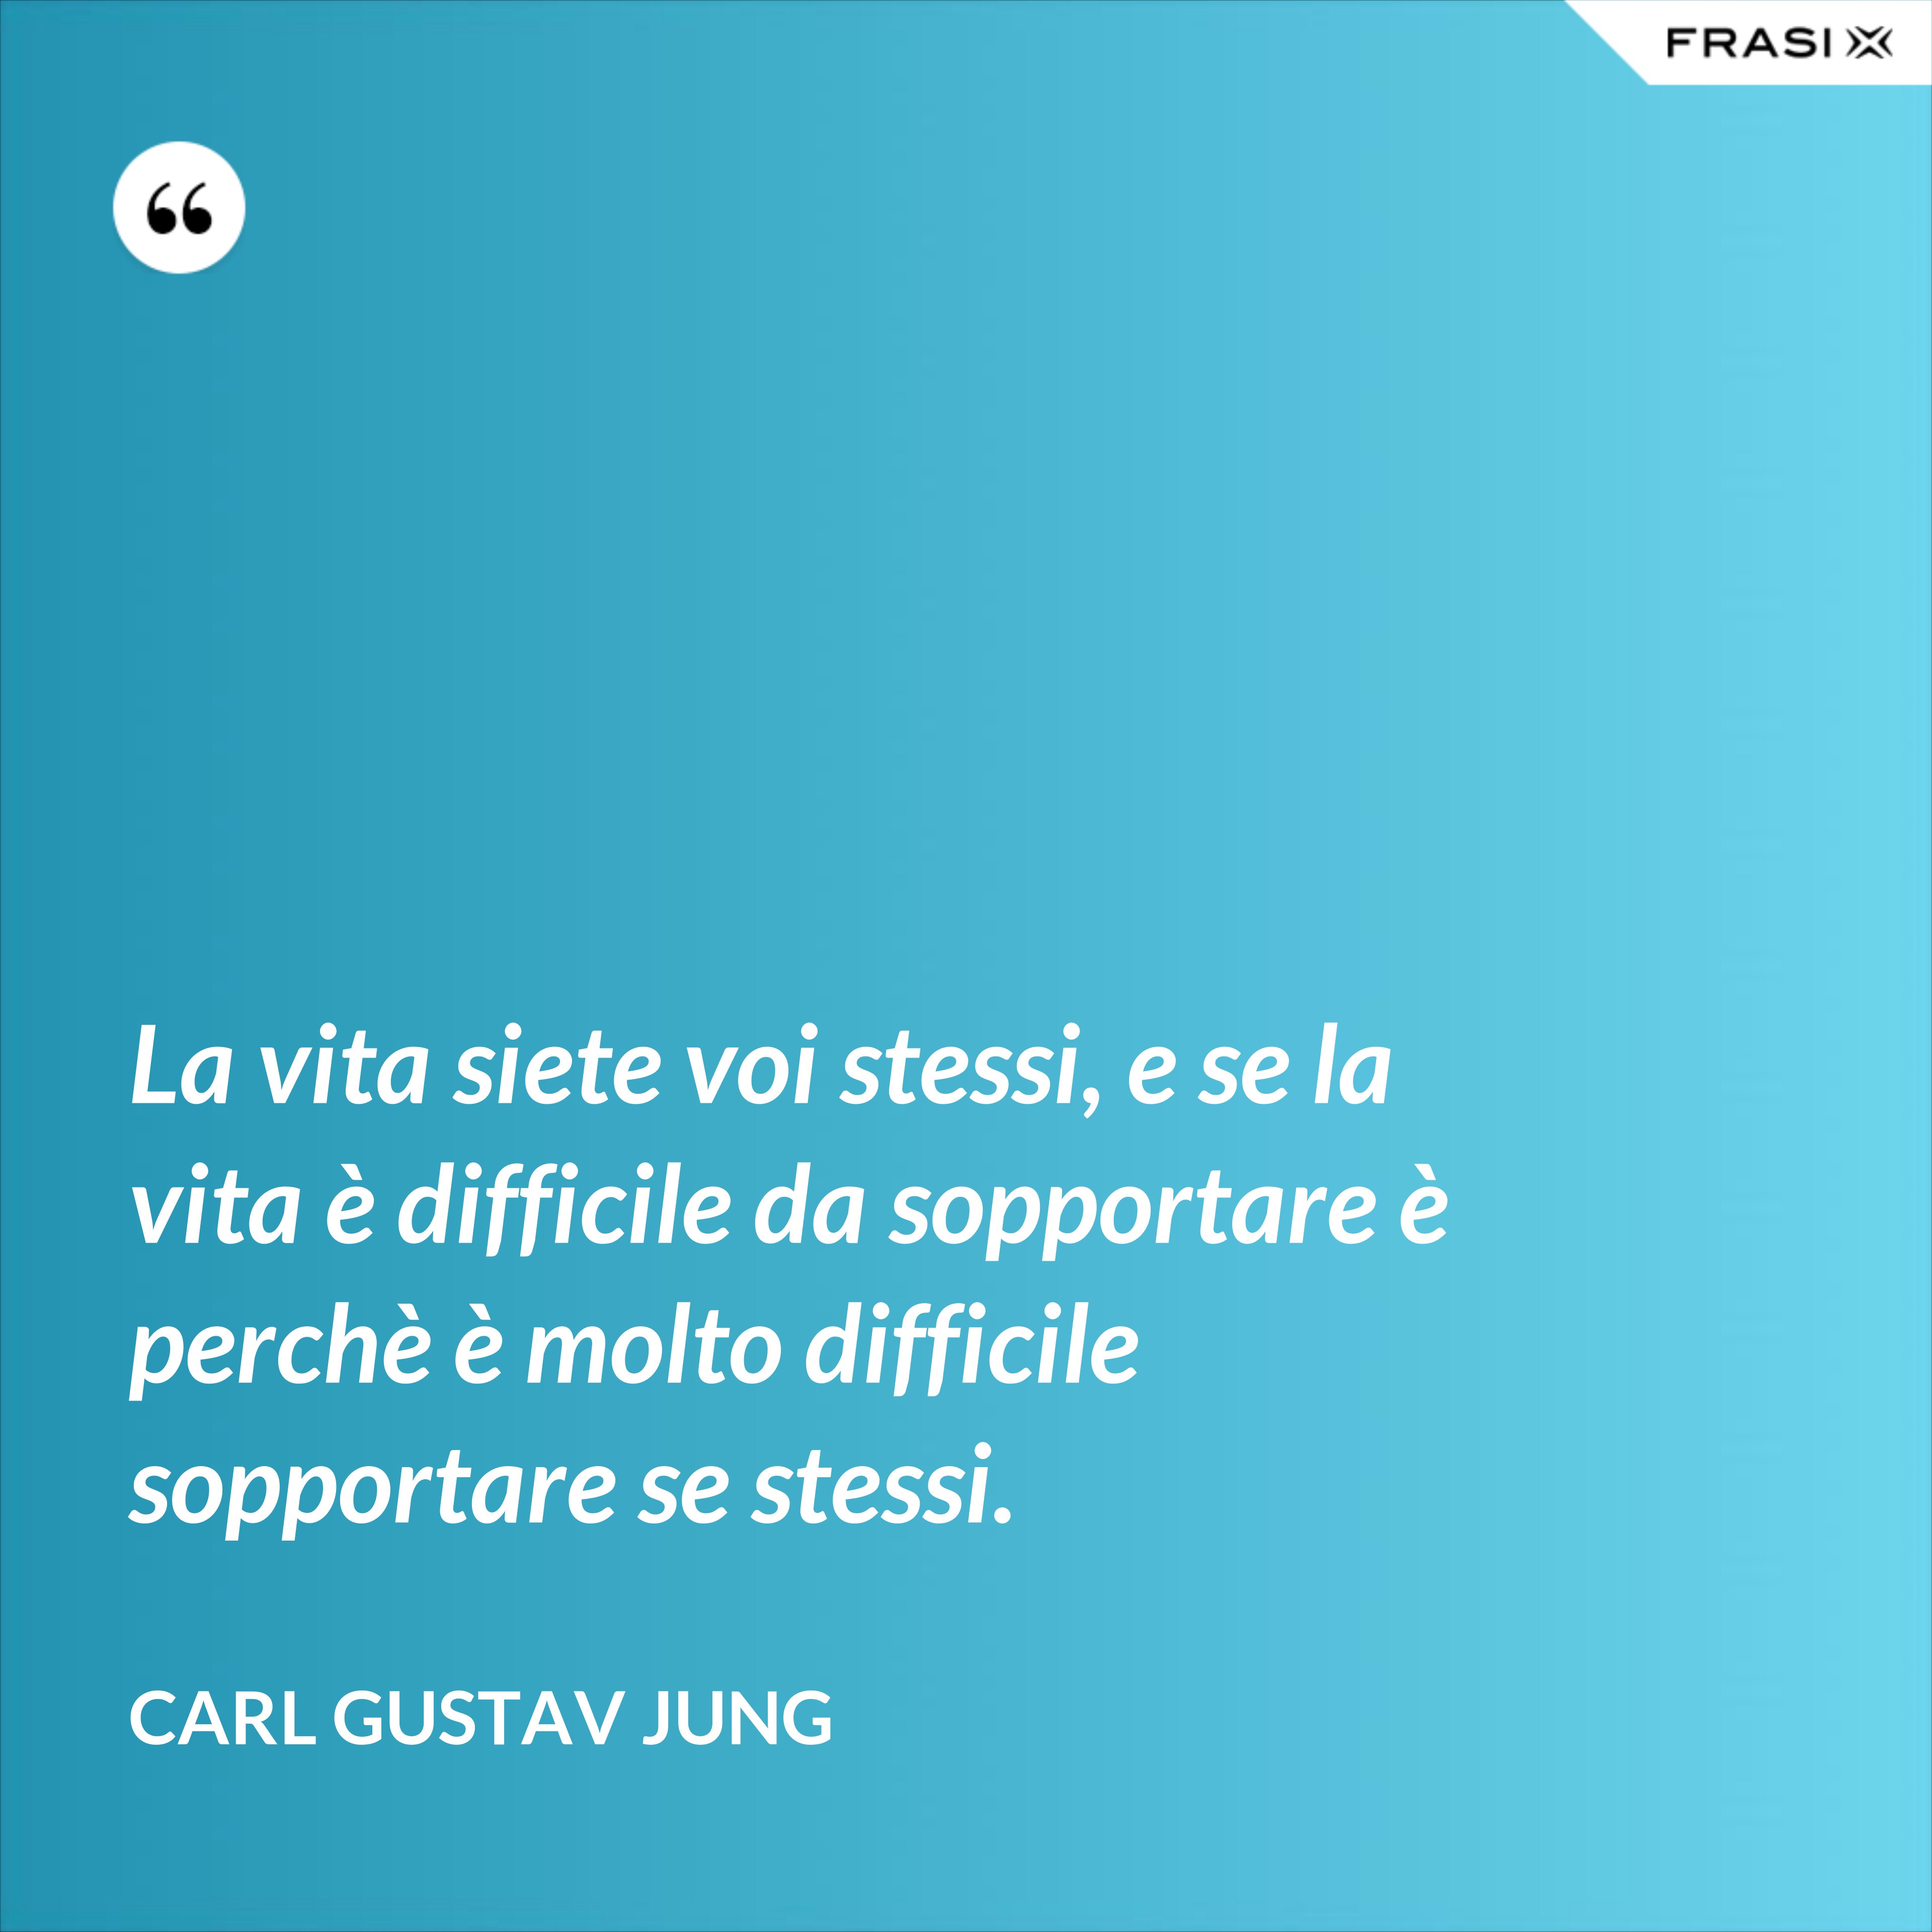 La vita siete voi stessi, e se la vita è difficile da sopportare è perchè è molto difficile sopportare se stessi. - Carl Gustav Jung